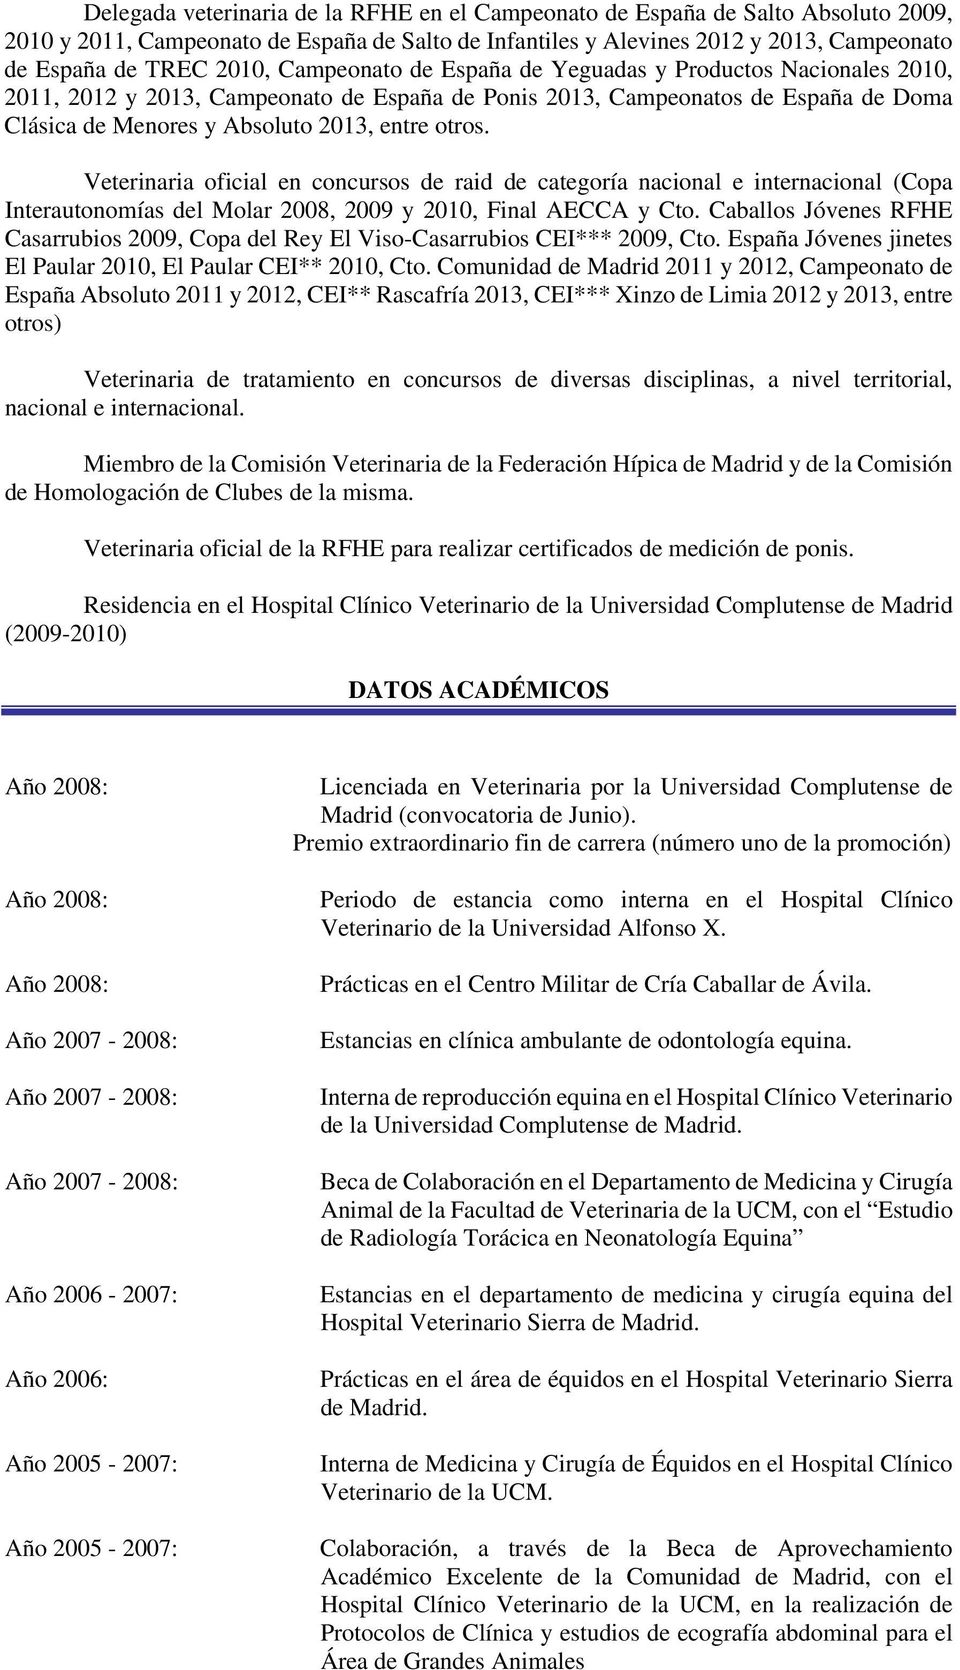 Veterinaria oficial en concursos de raid de categoría nacional e internacional (Copa Interautonomías del Molar 2008, 2009 y 2010, Final AECCA y Cto.